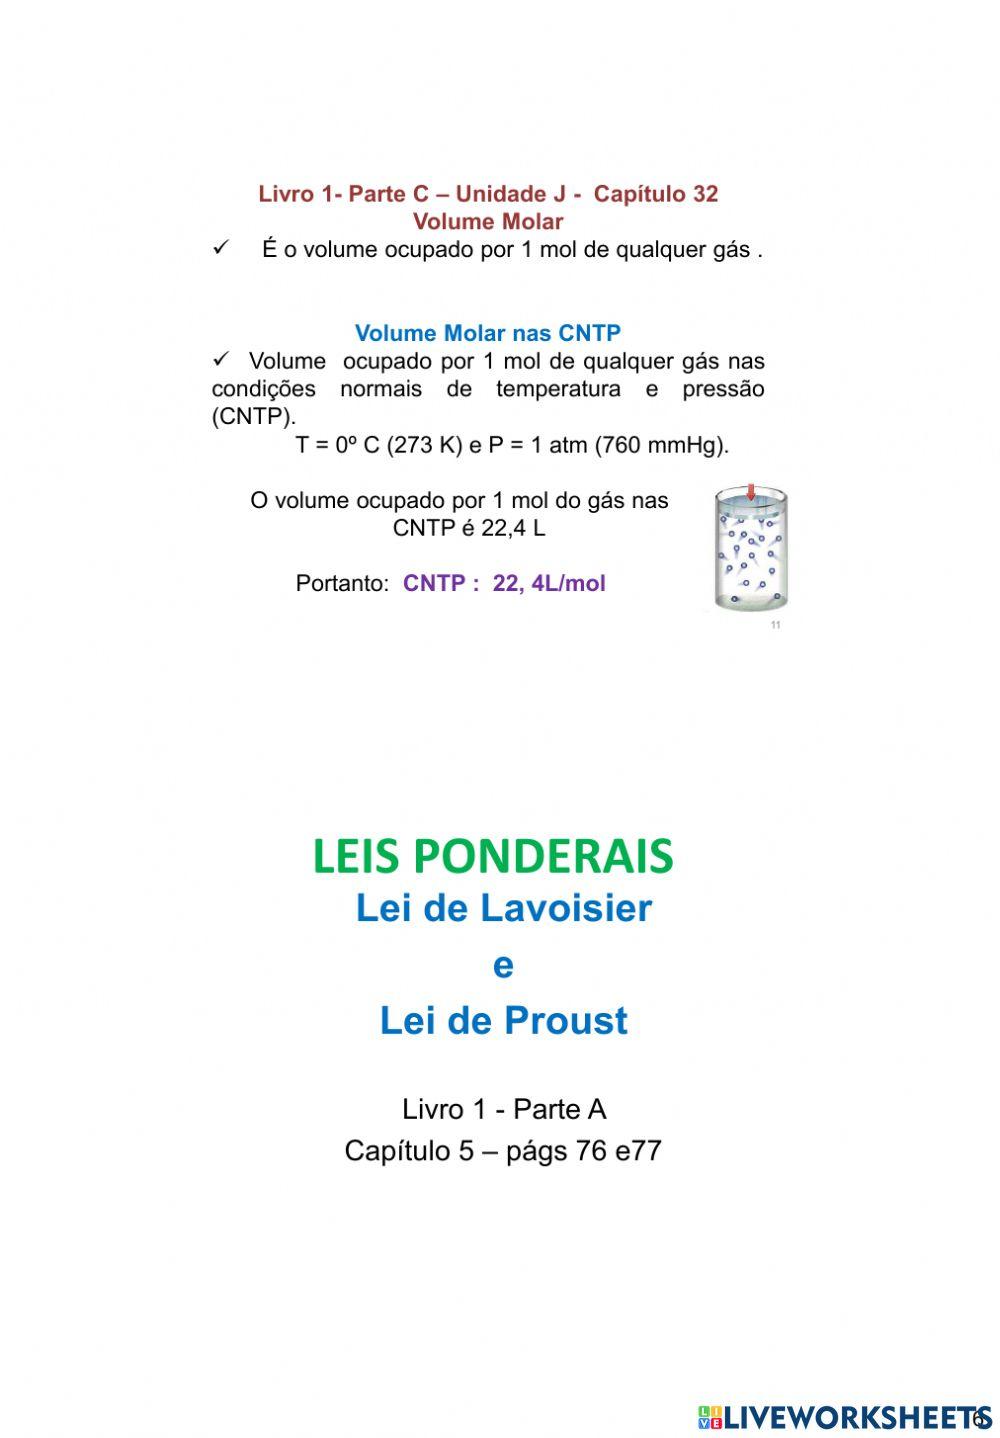 Leis Ponderais: Lei de Lavoisier. worksheet